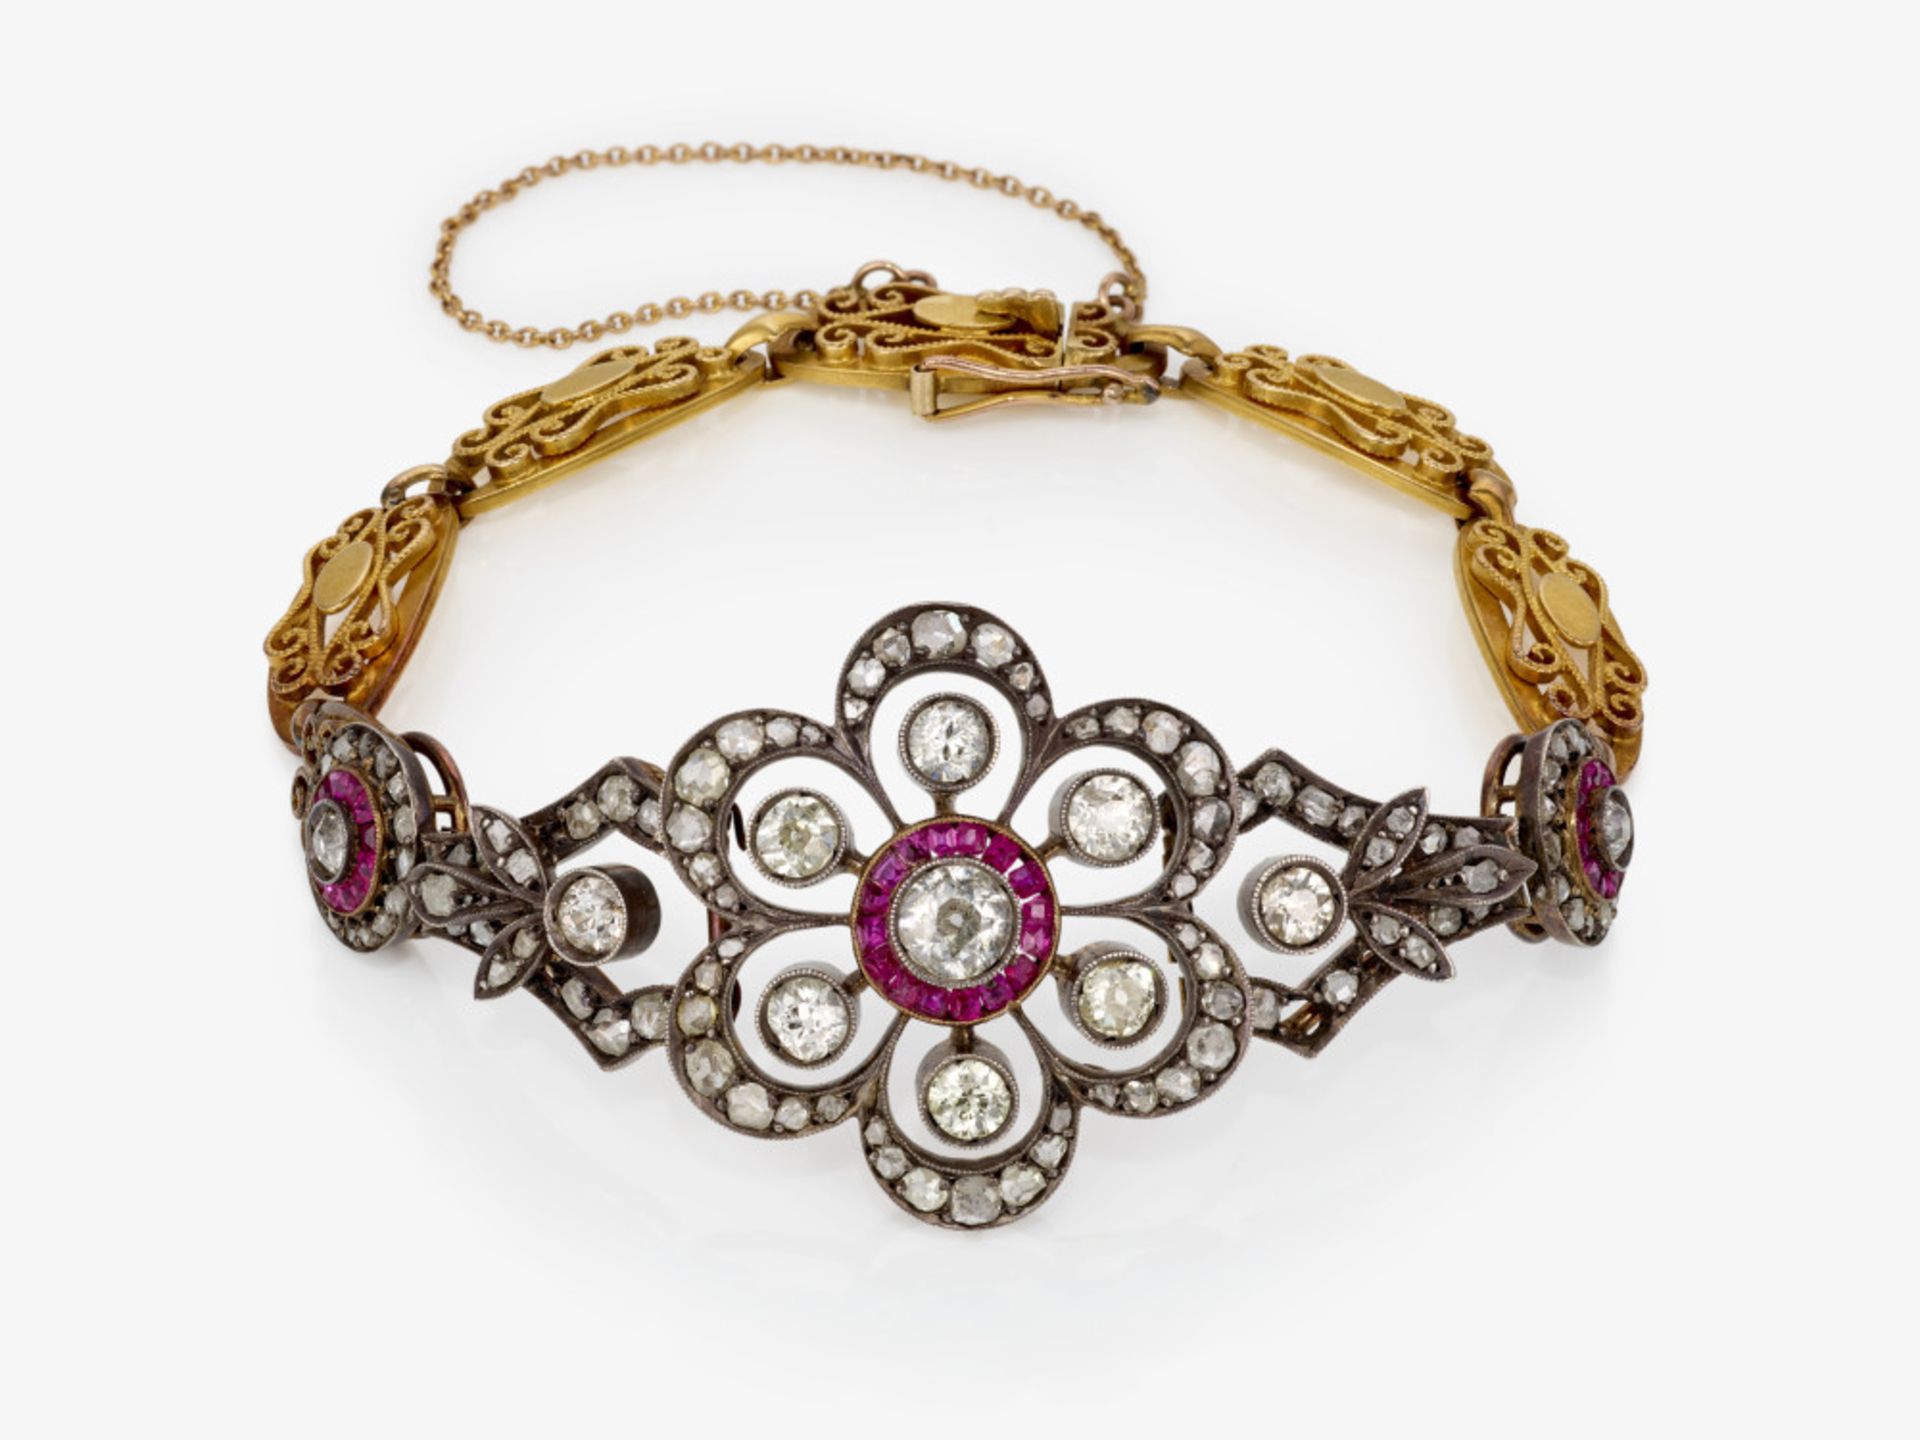 Armband mit Rubinen und Diamanten - Frankreich oder Deutschland, um 1900 